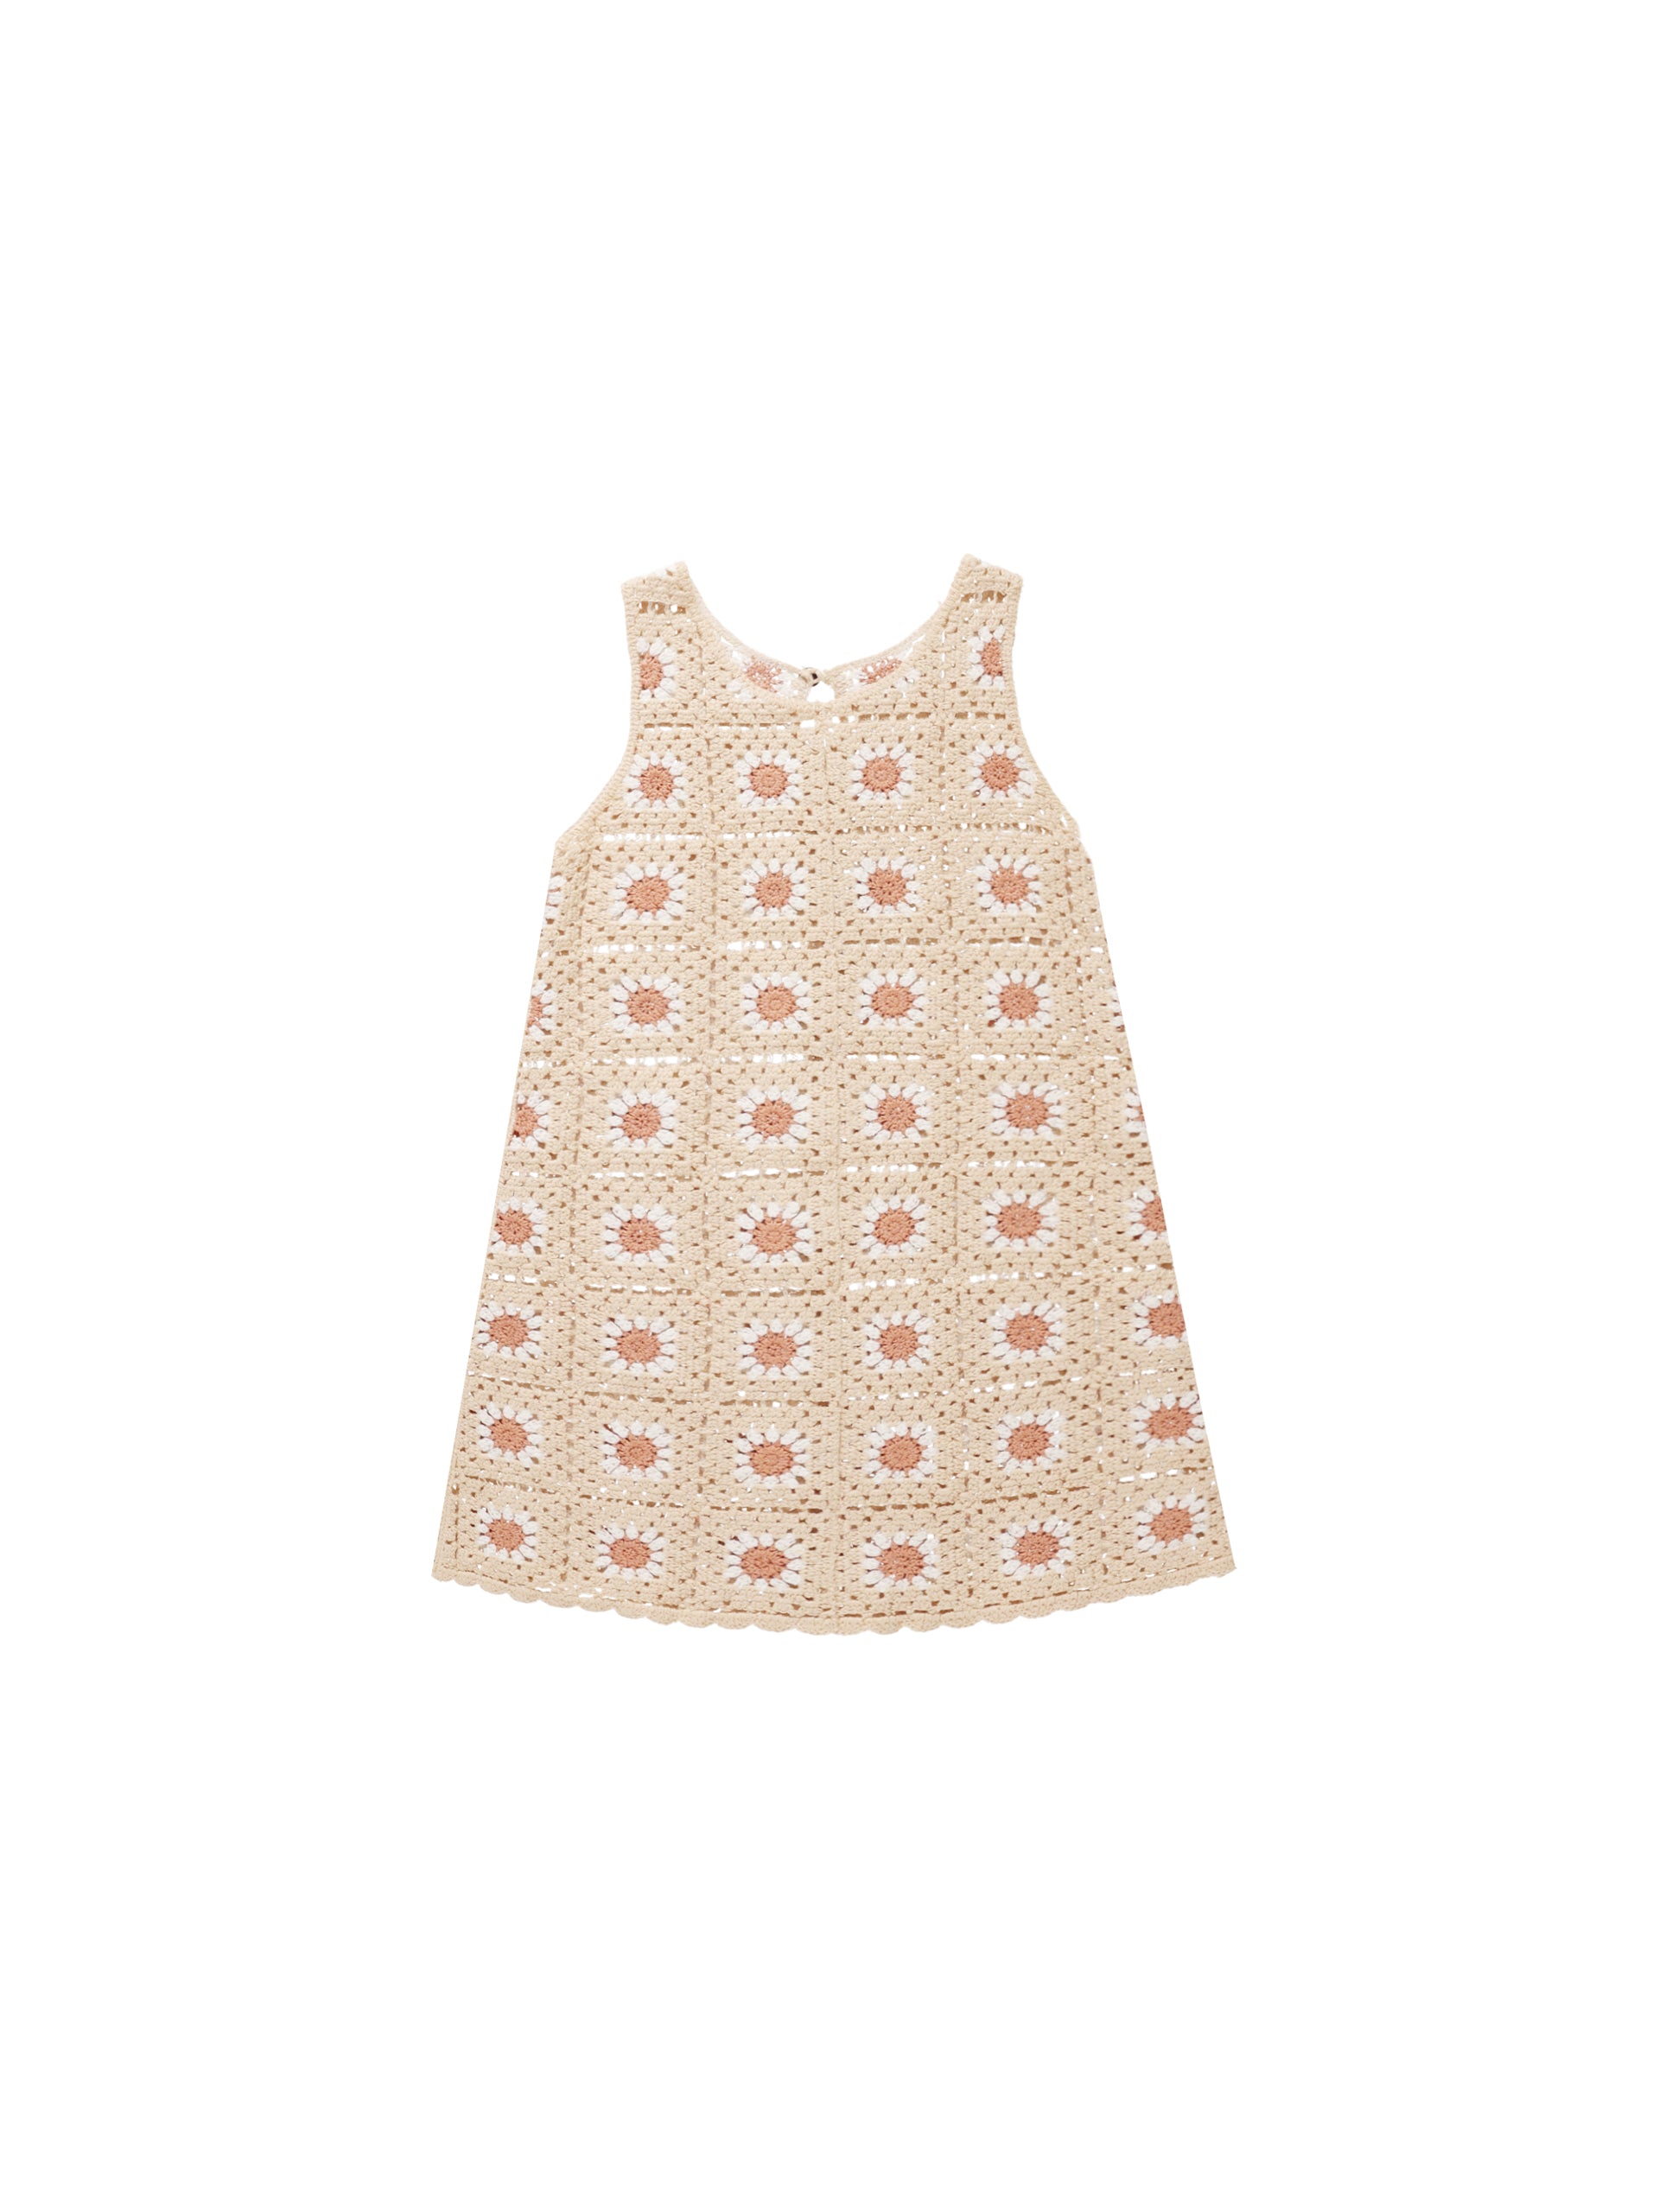 Crochet Tank Mini Dress - Floral - Twinkle Twinkle Little One